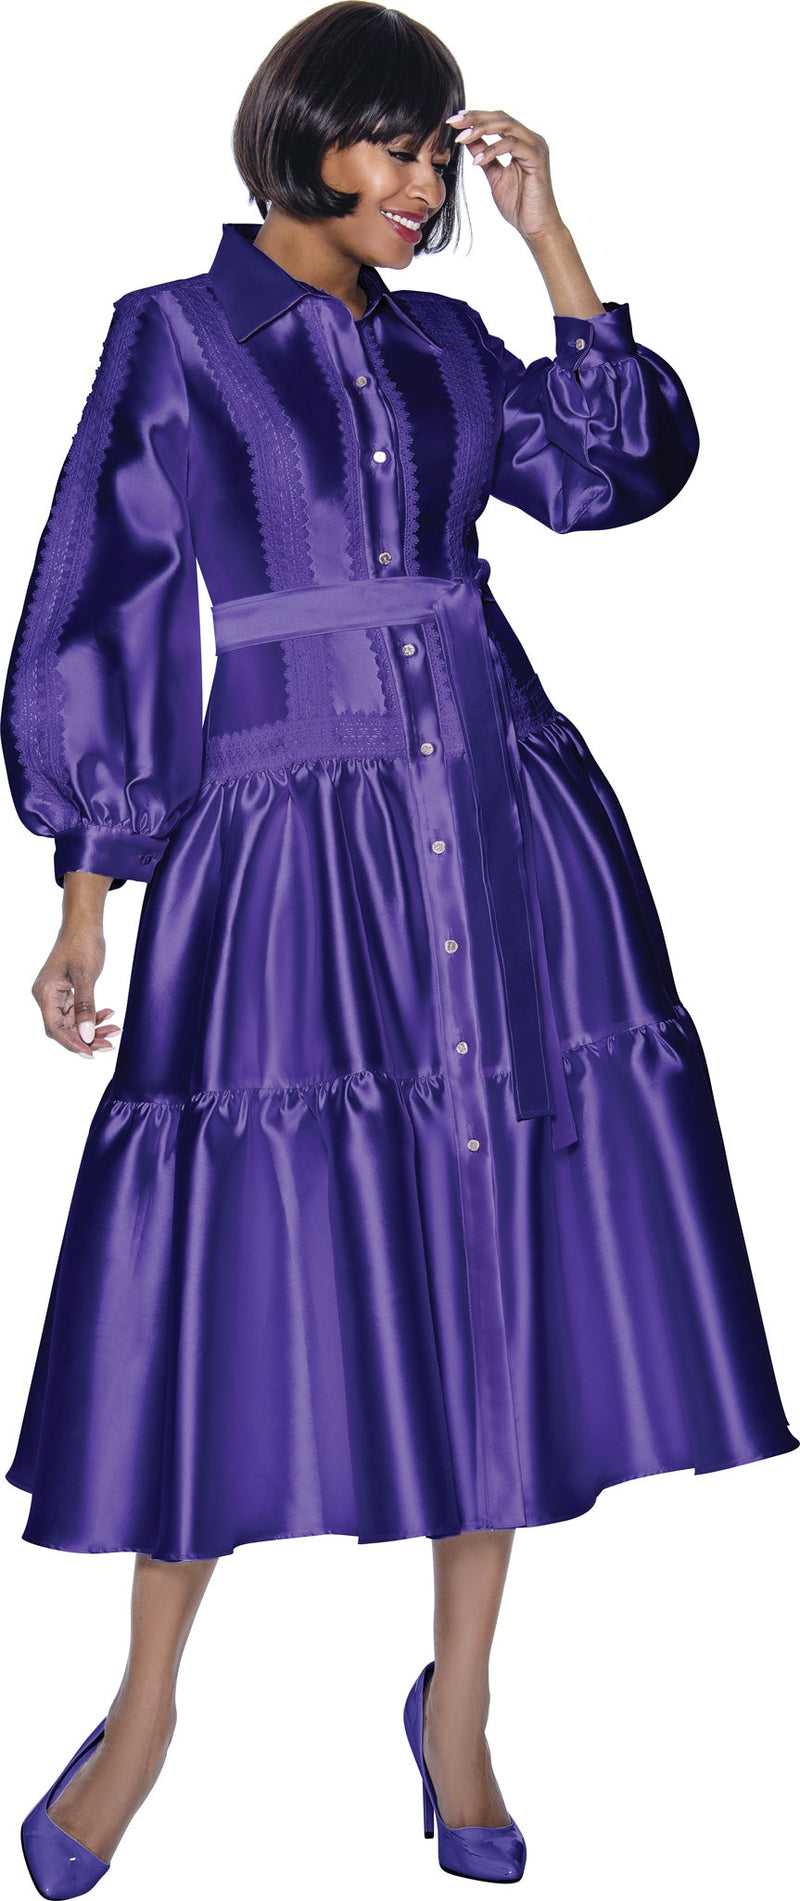 Terramina Church Dress 7029-Purple - Church Suits For Less